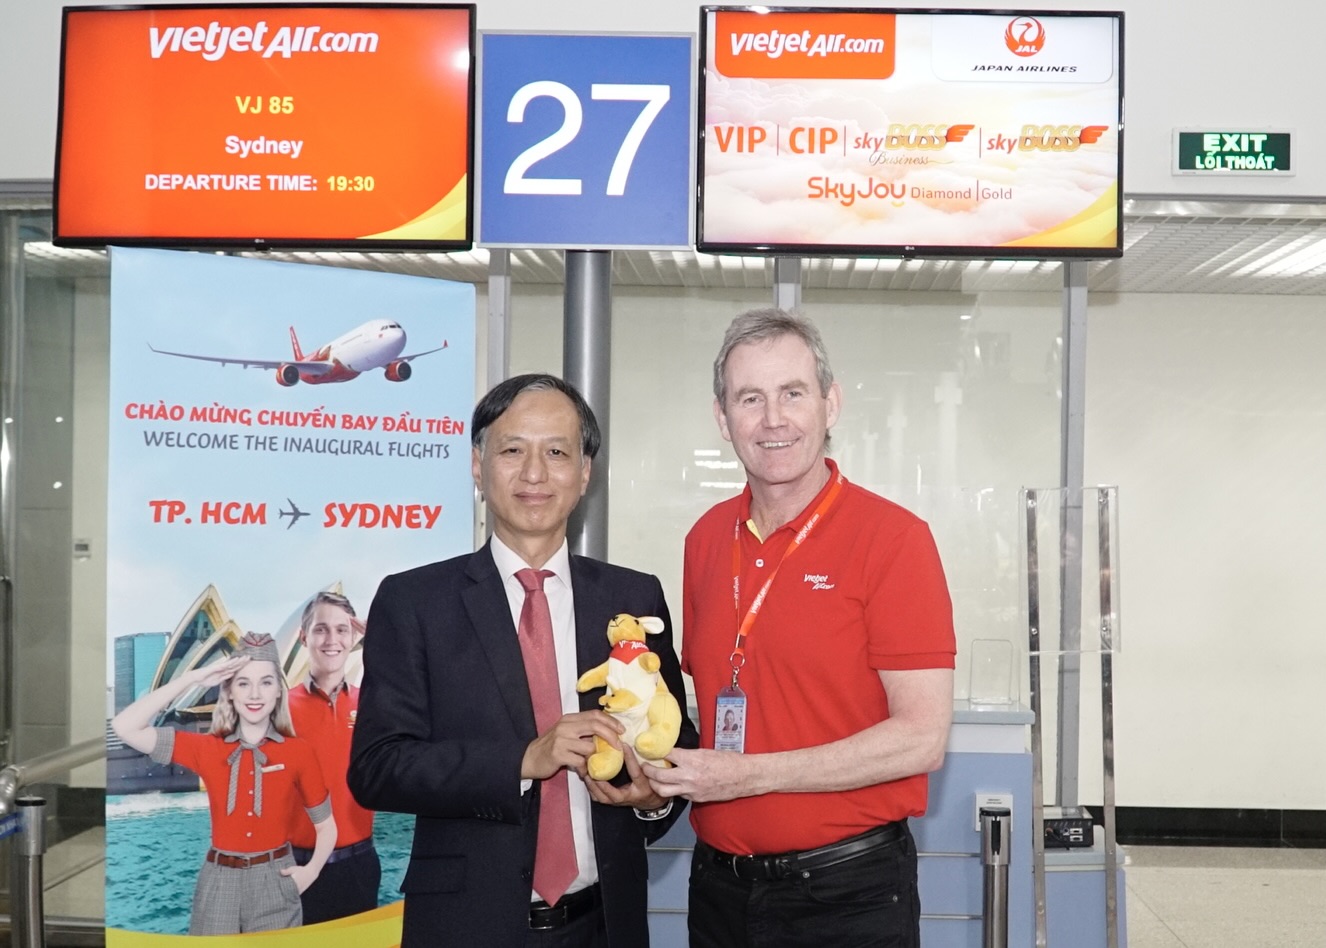 Đại sứ Việt Nam tại Úc - Nguyễn Tất Thành và Phó Tổng giám đốc Vietjet Michael Hickey (áo đỏ) chào mừng chuyến bay đầu tiên